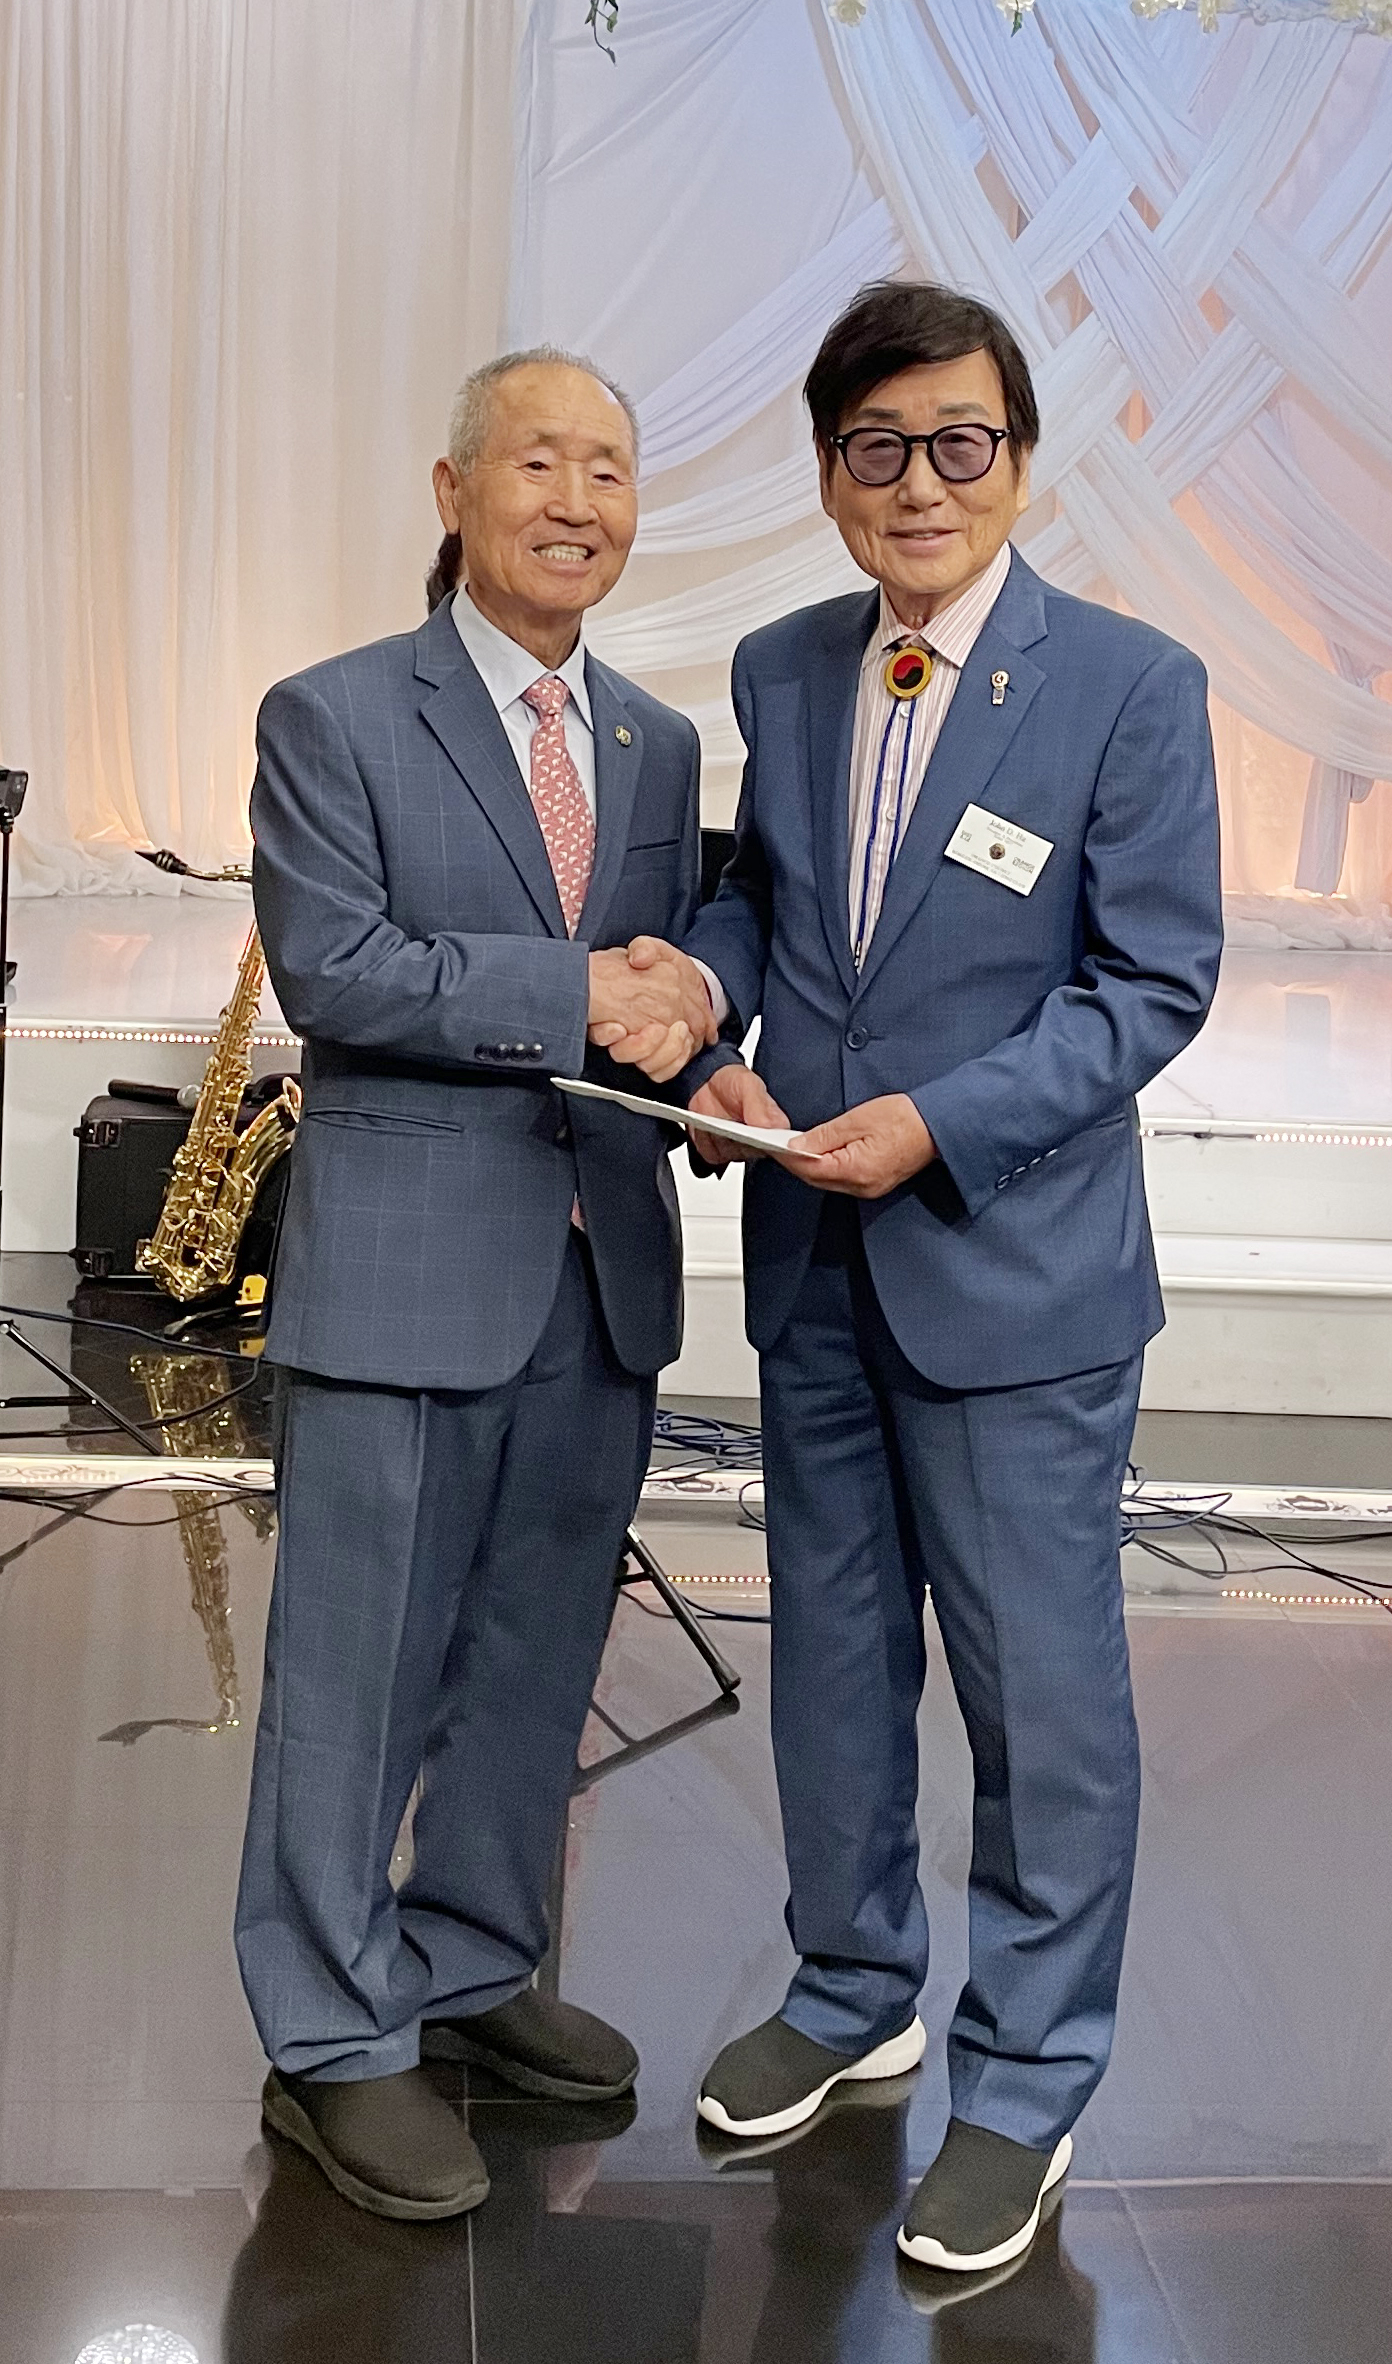 존 하(오른쪽) OC한인라이온스클럽 전 회장이 김가등 노인센터 회장에게 기금을 전달하는 모습.